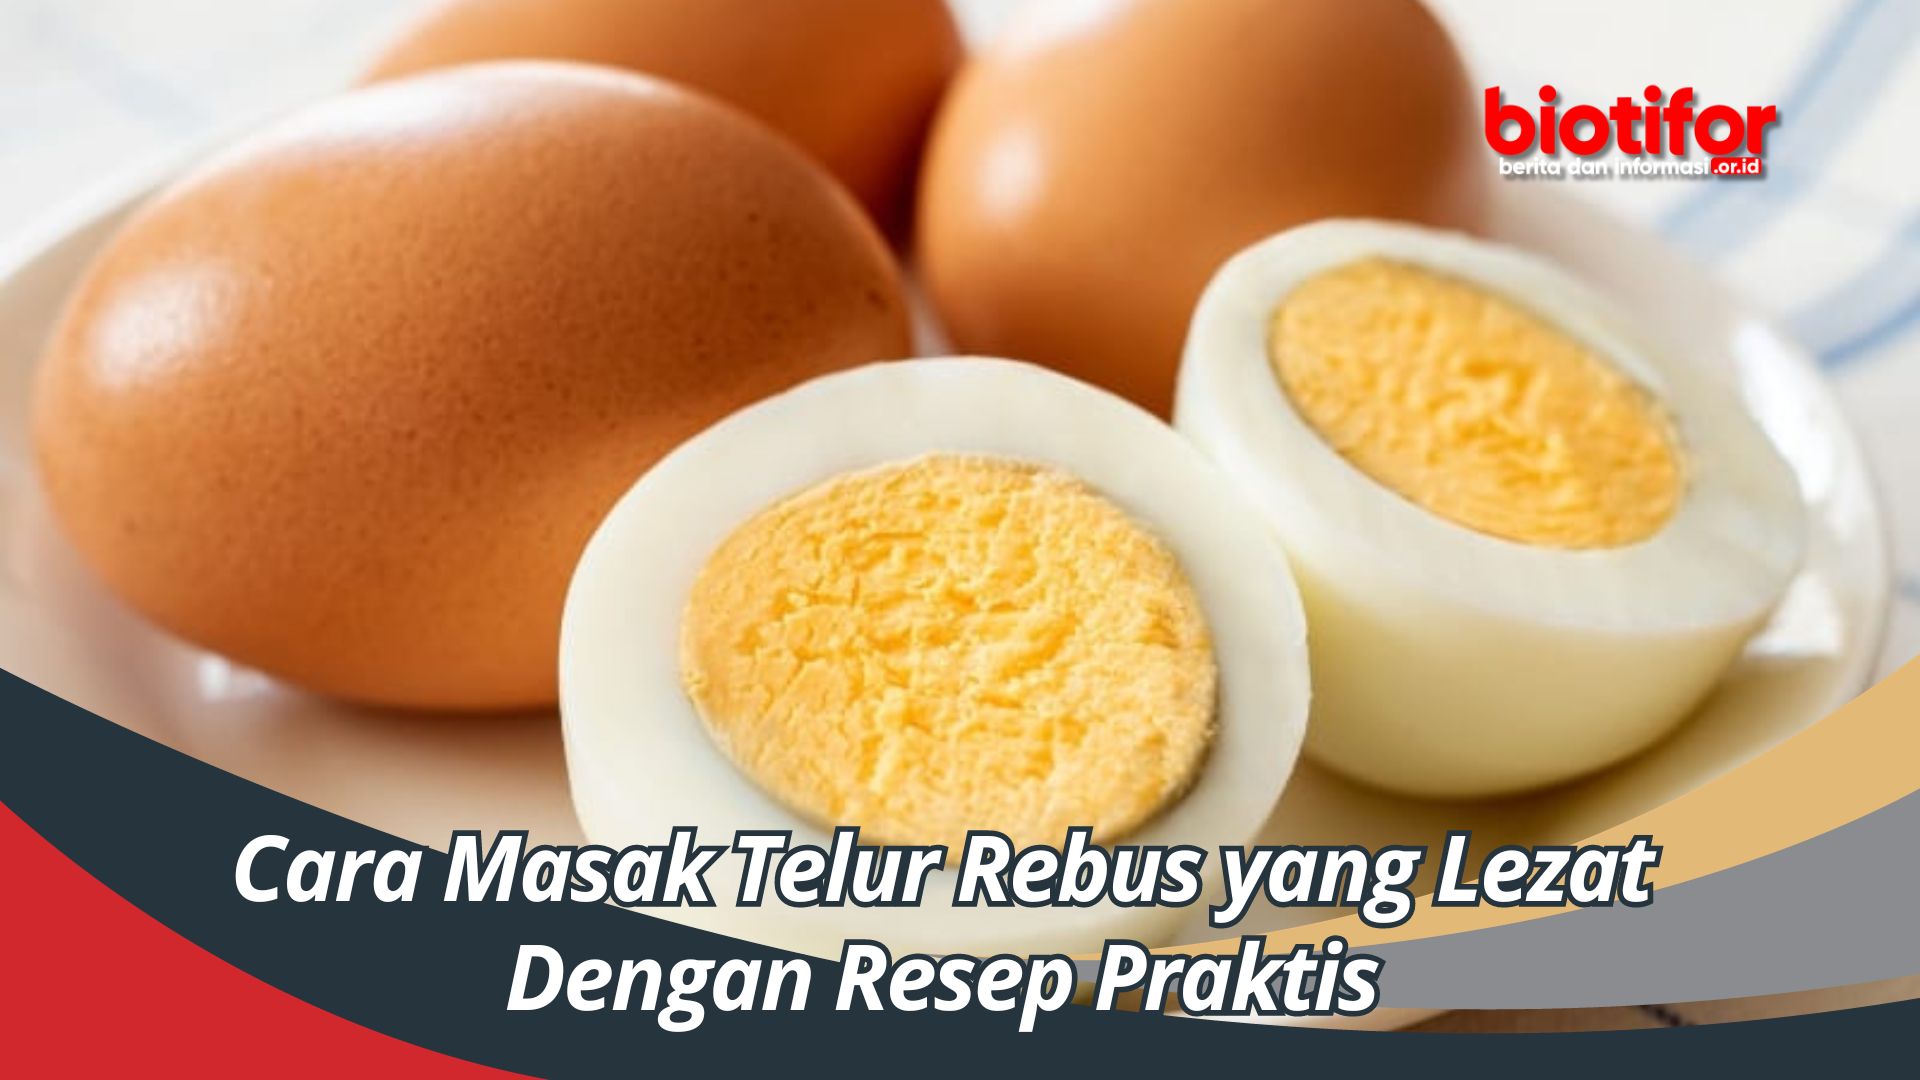 Cara Masak Telur Rebus yang Lezat Dengan Resep Praktis